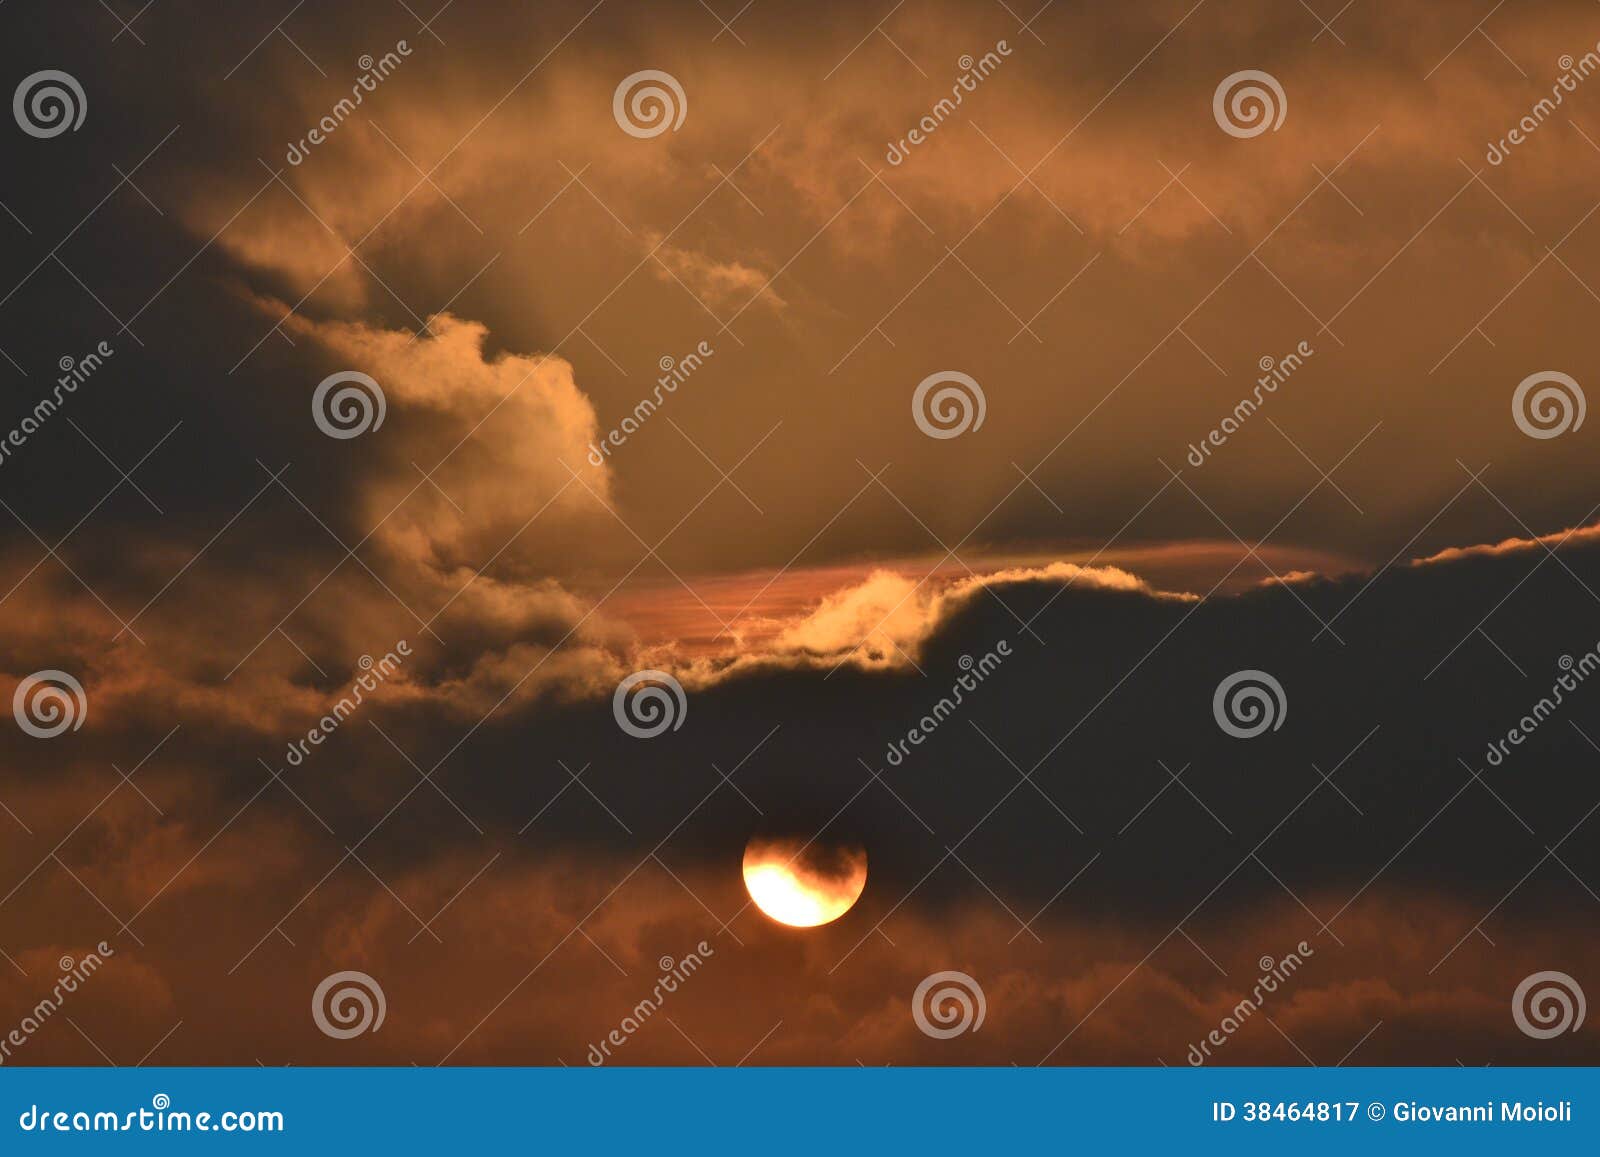 Der große Sonnenuntergang. Dieses Foto stellt einen Sonnenuntergang dar. die Sonne wird teilweise durch die Wolken bedeckt. Das Licht der Sonne und die Farben der Wolken schaffen eine erstaunliche Atmosphäre